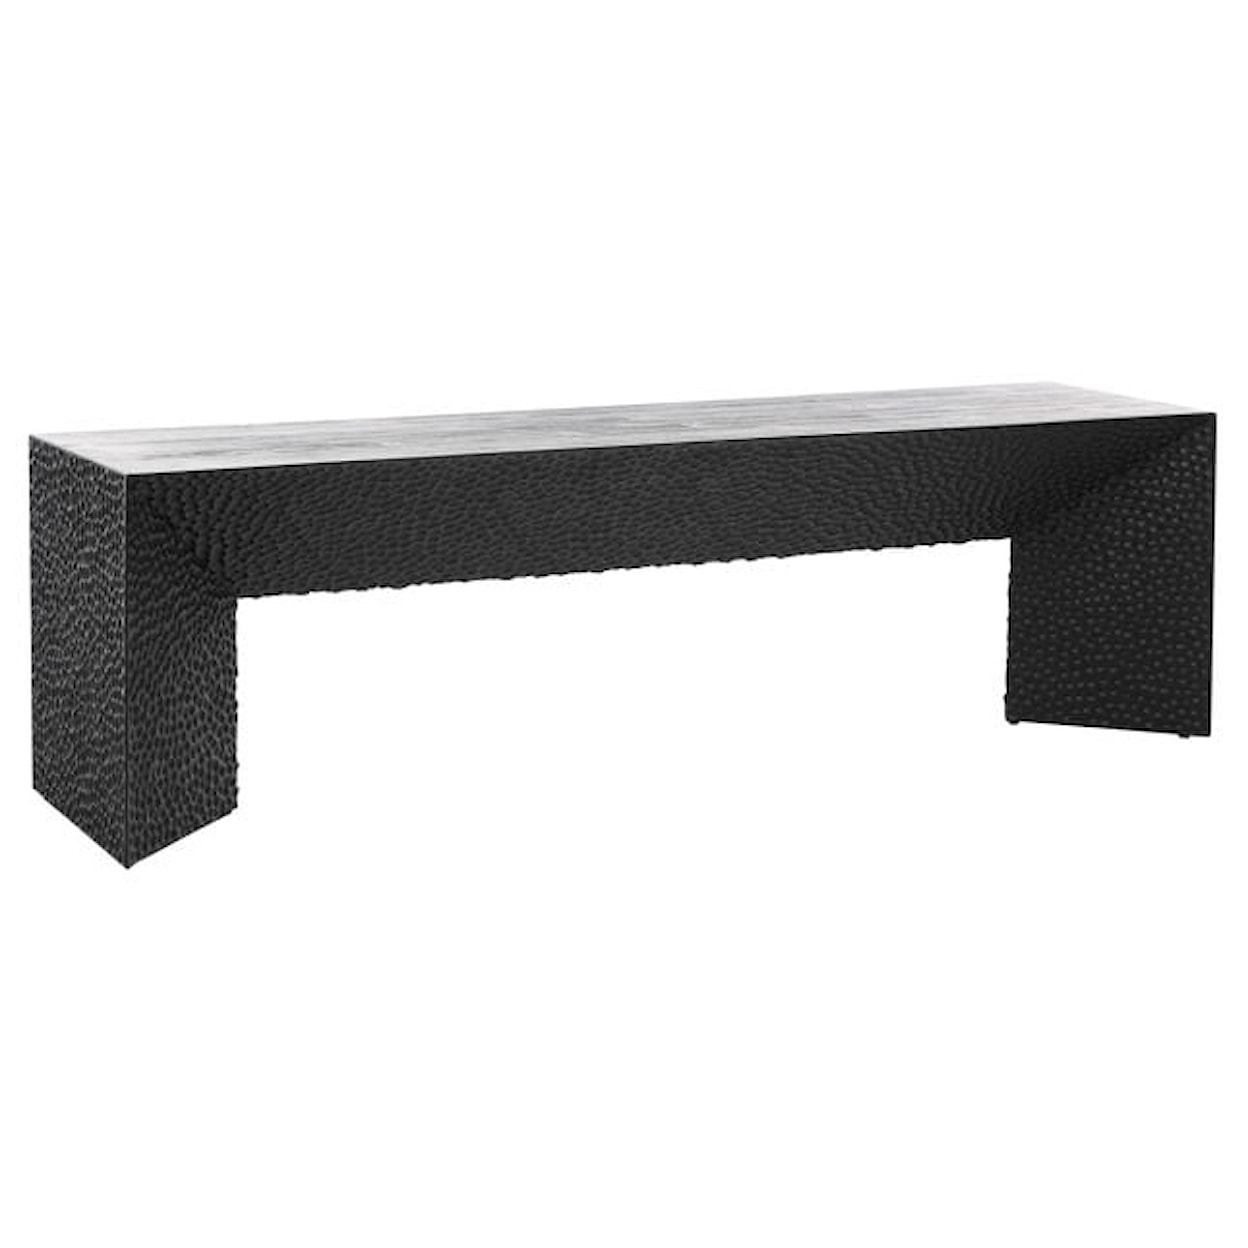 Dovetail Furniture Orbina Orbina Bench